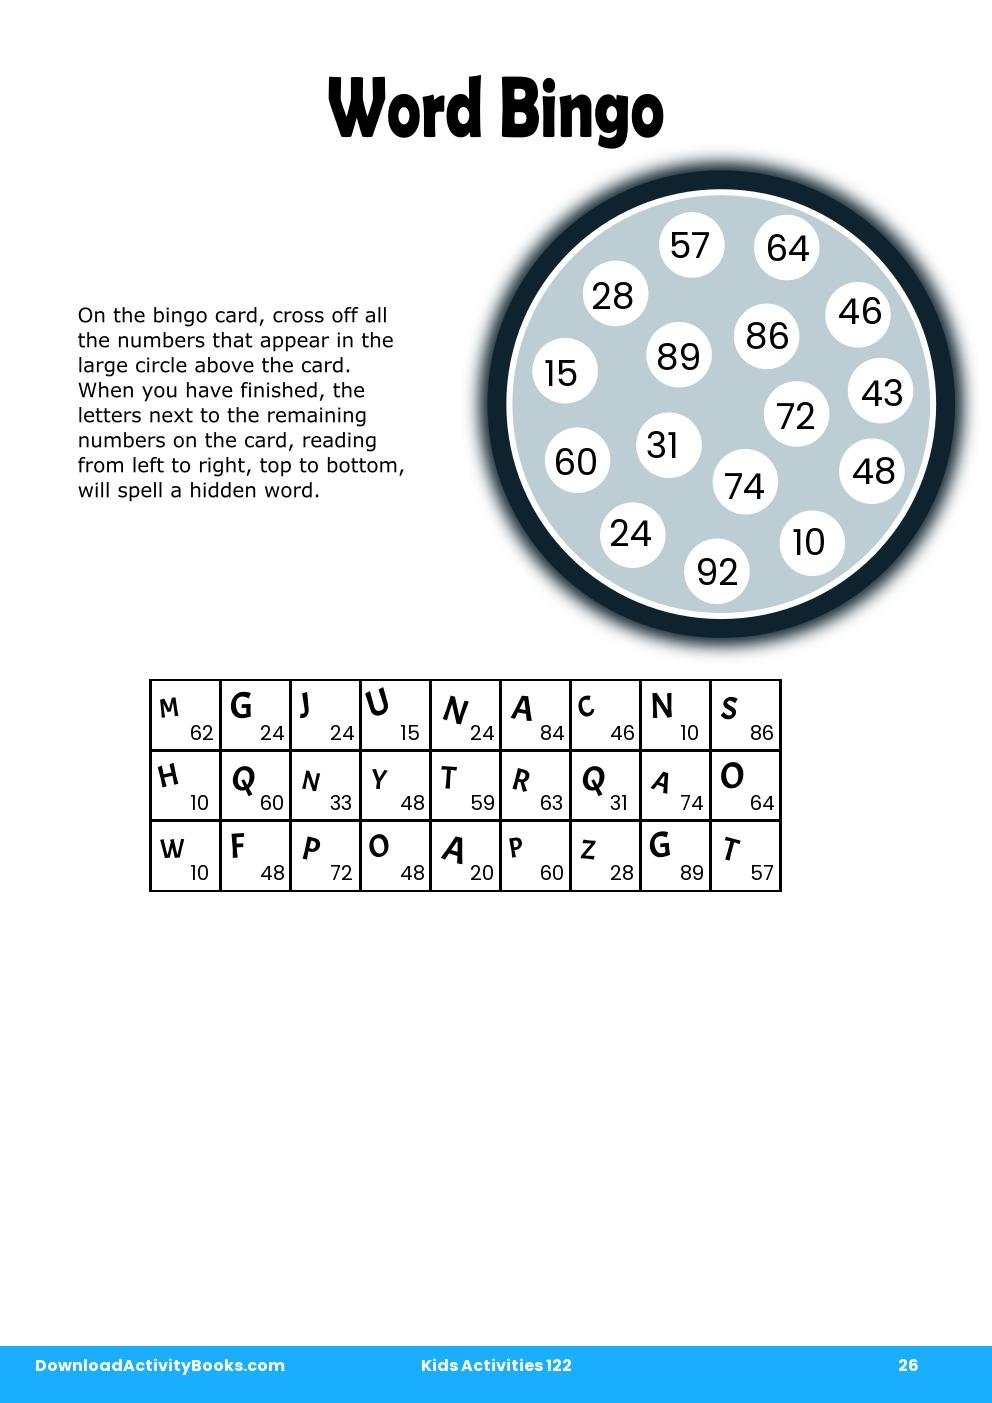 Word Bingo in Kids Activities 122